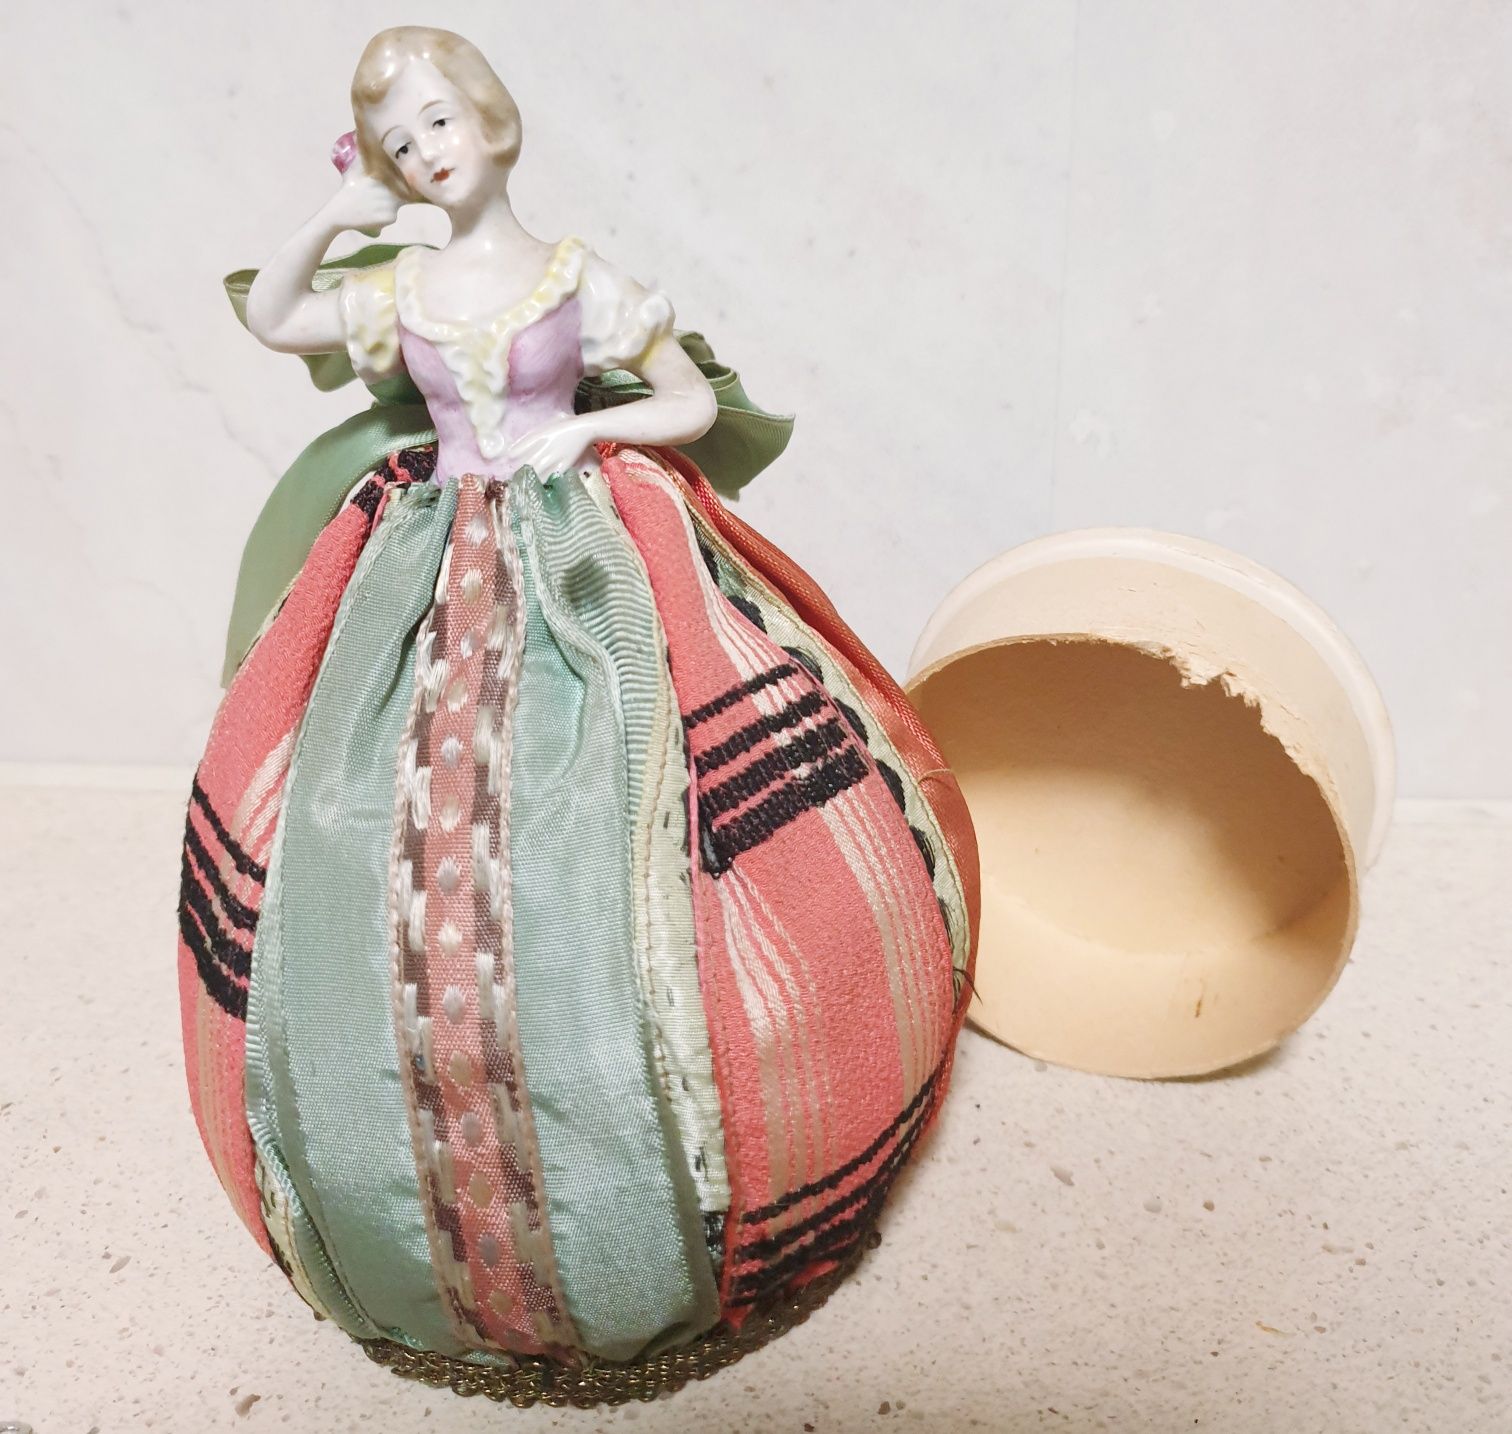 Linda antiga boneca "half doll" de pó de arroz em porcelana alemã